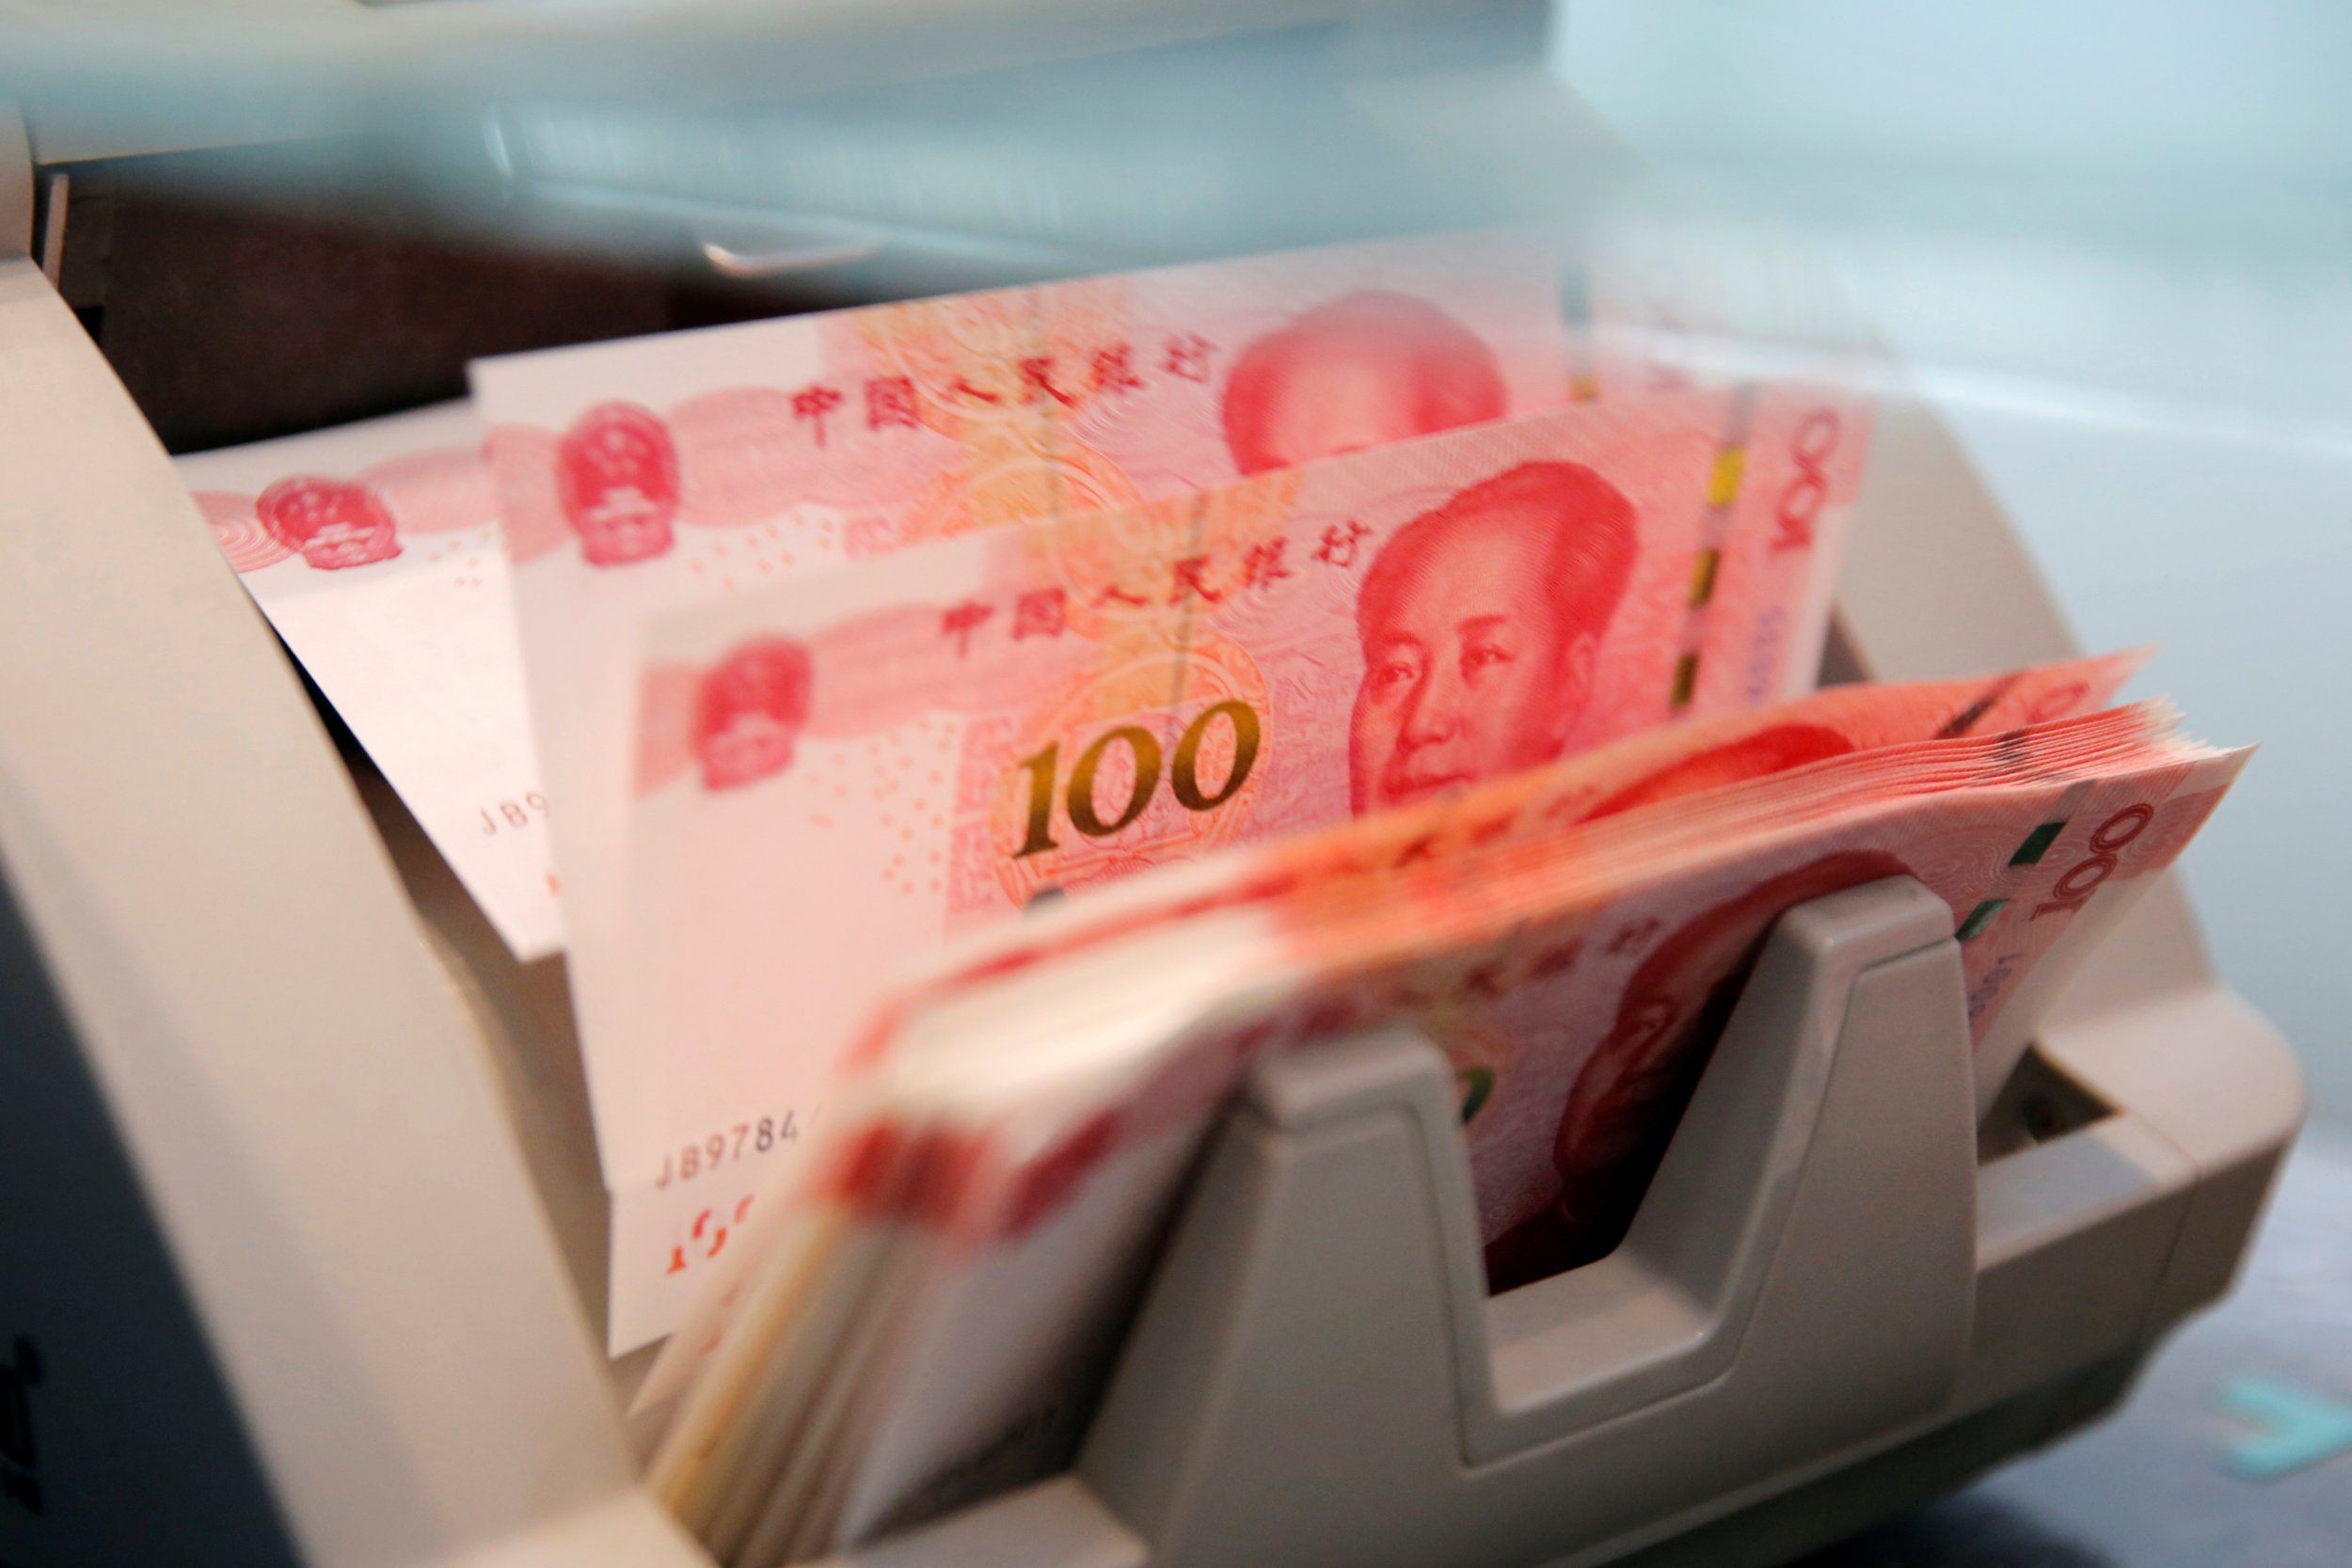 Chinese 100 yuan banknotes